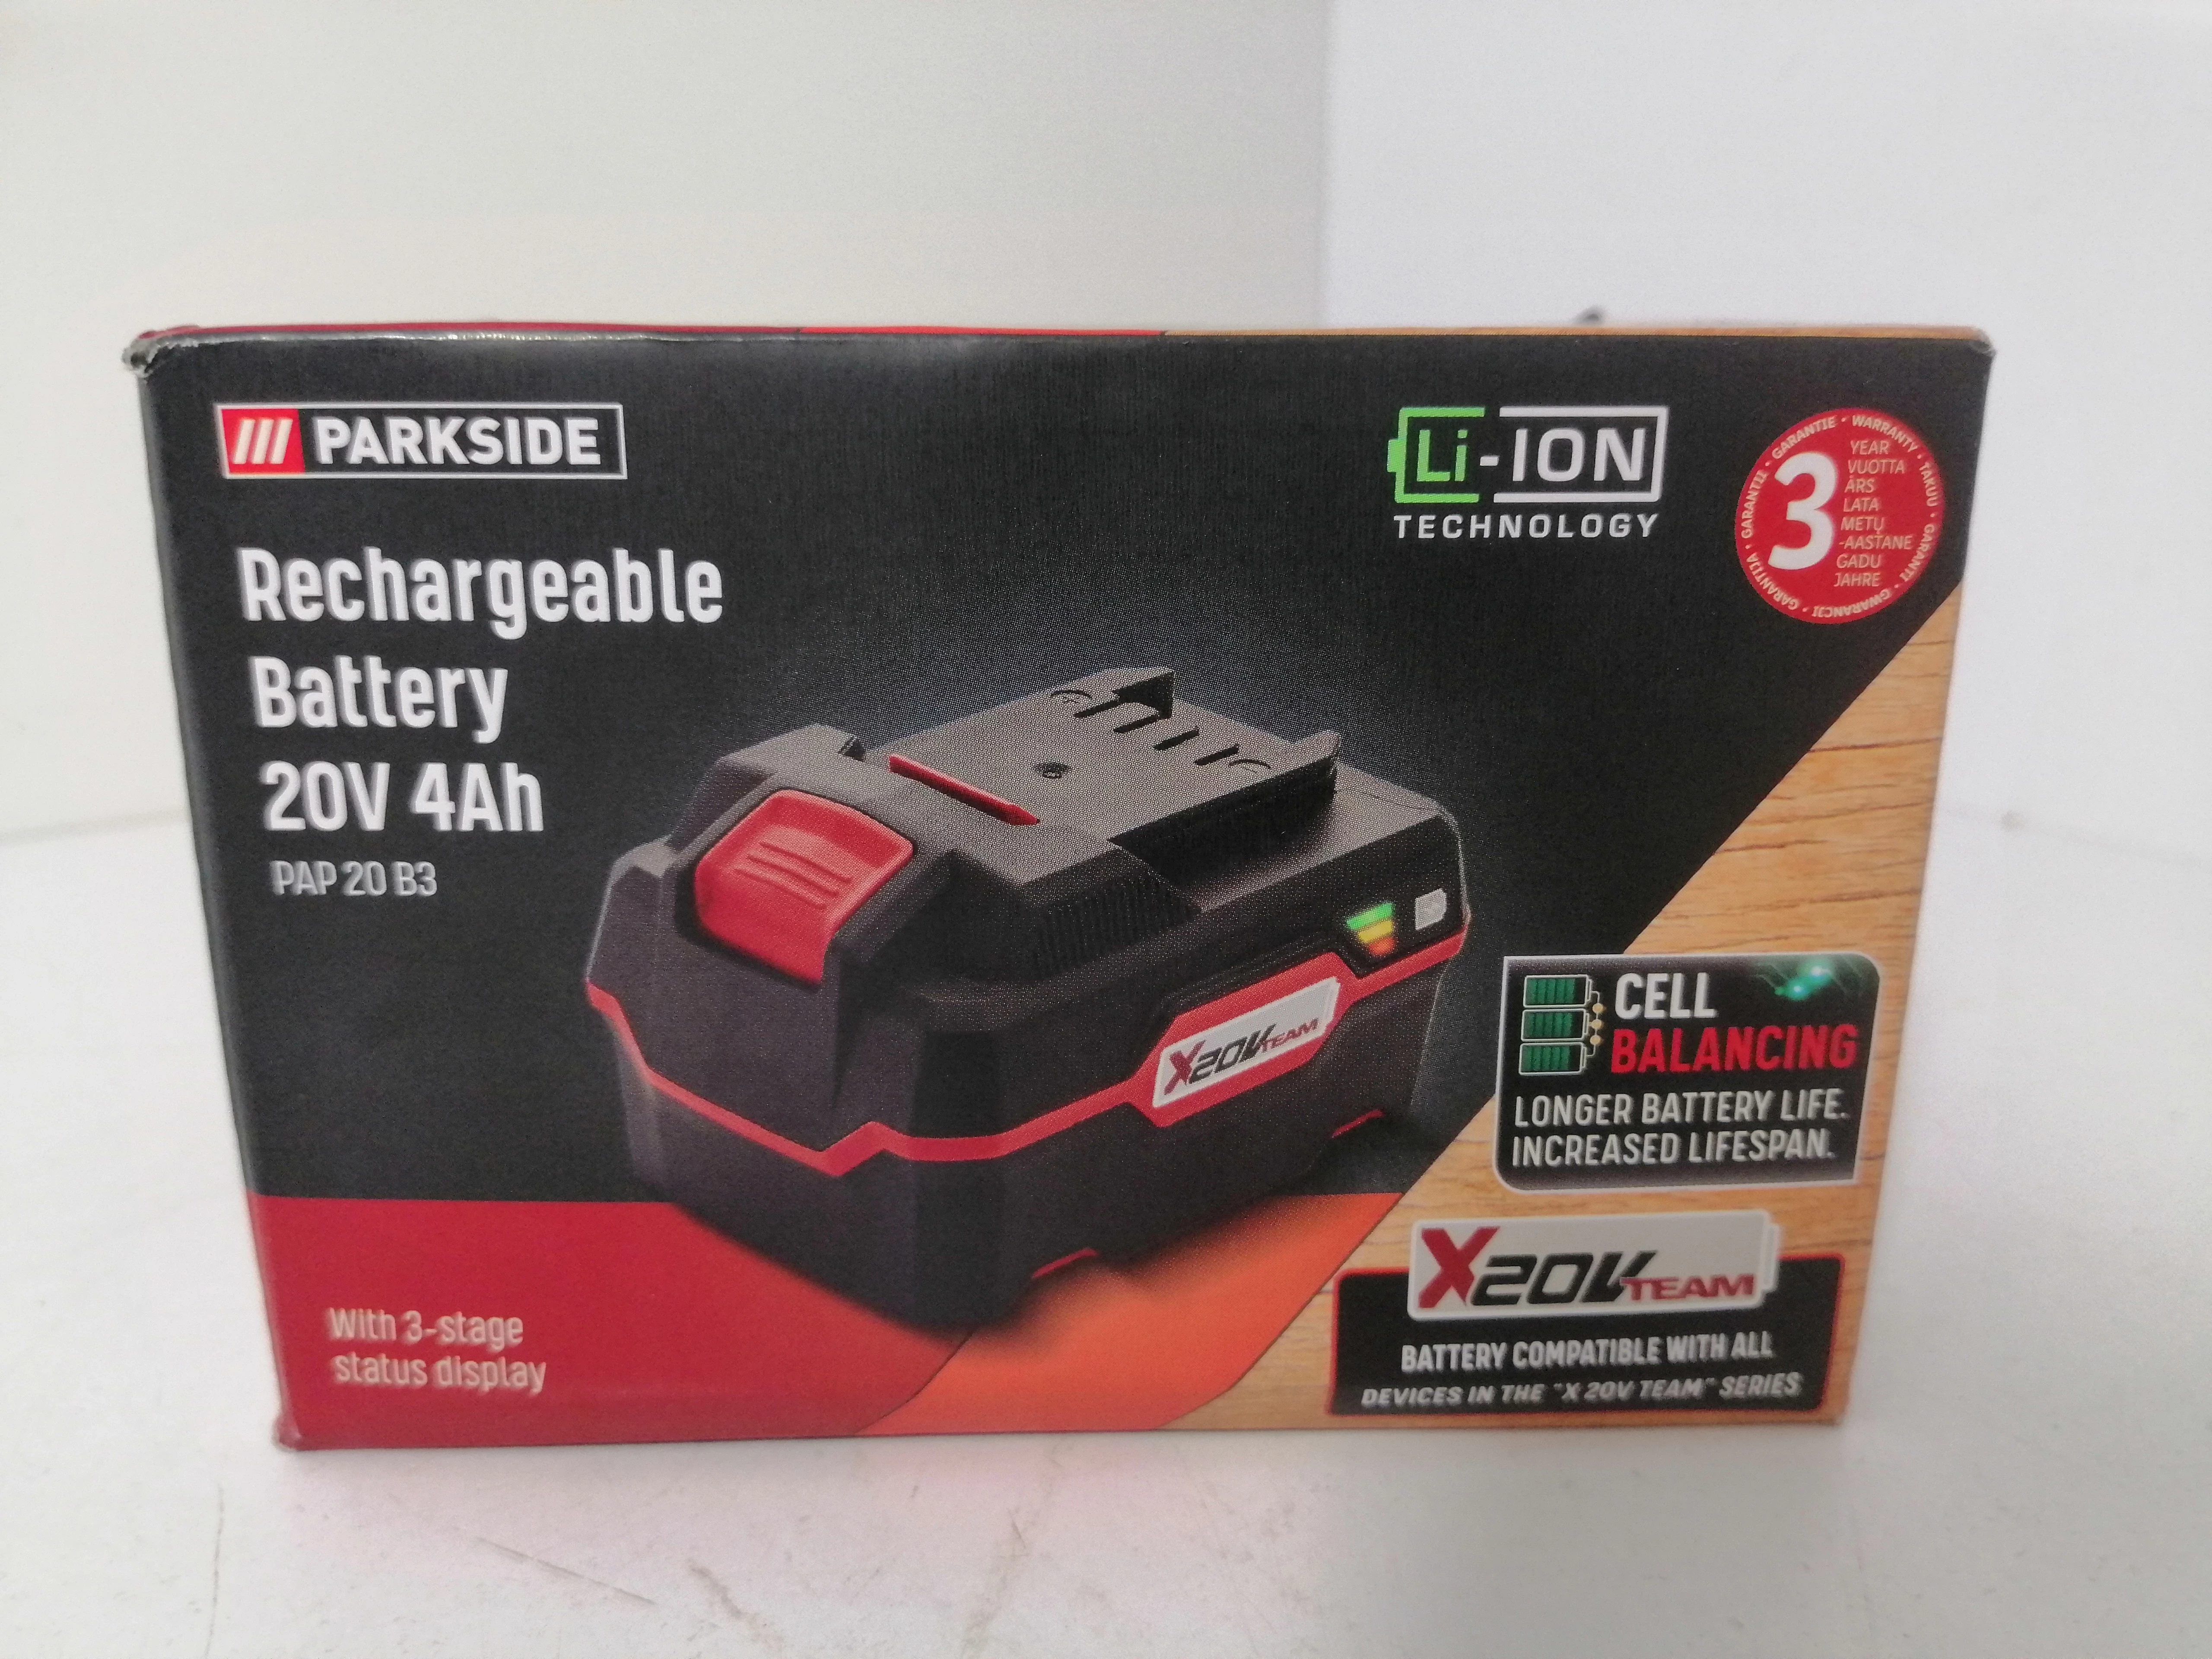 PARKSIDE® Batterie PAP 20 B3, 4 Ah, 20 V